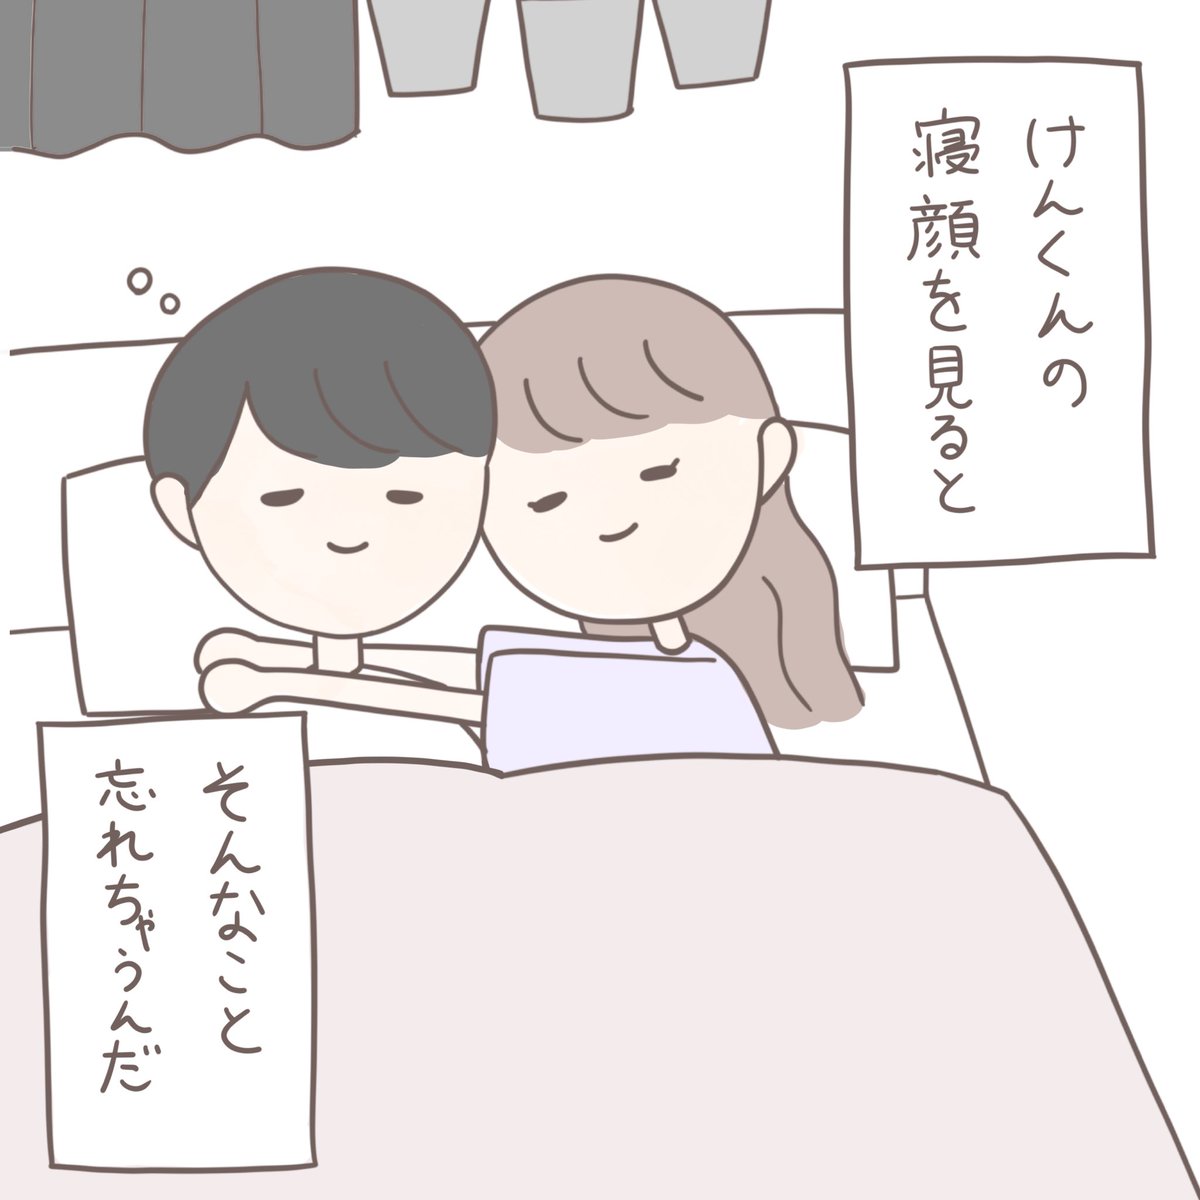 Usagi On Twitter ほのぼの恋愛漫画 いつもの朝に カップル漫画 カップルイラスト